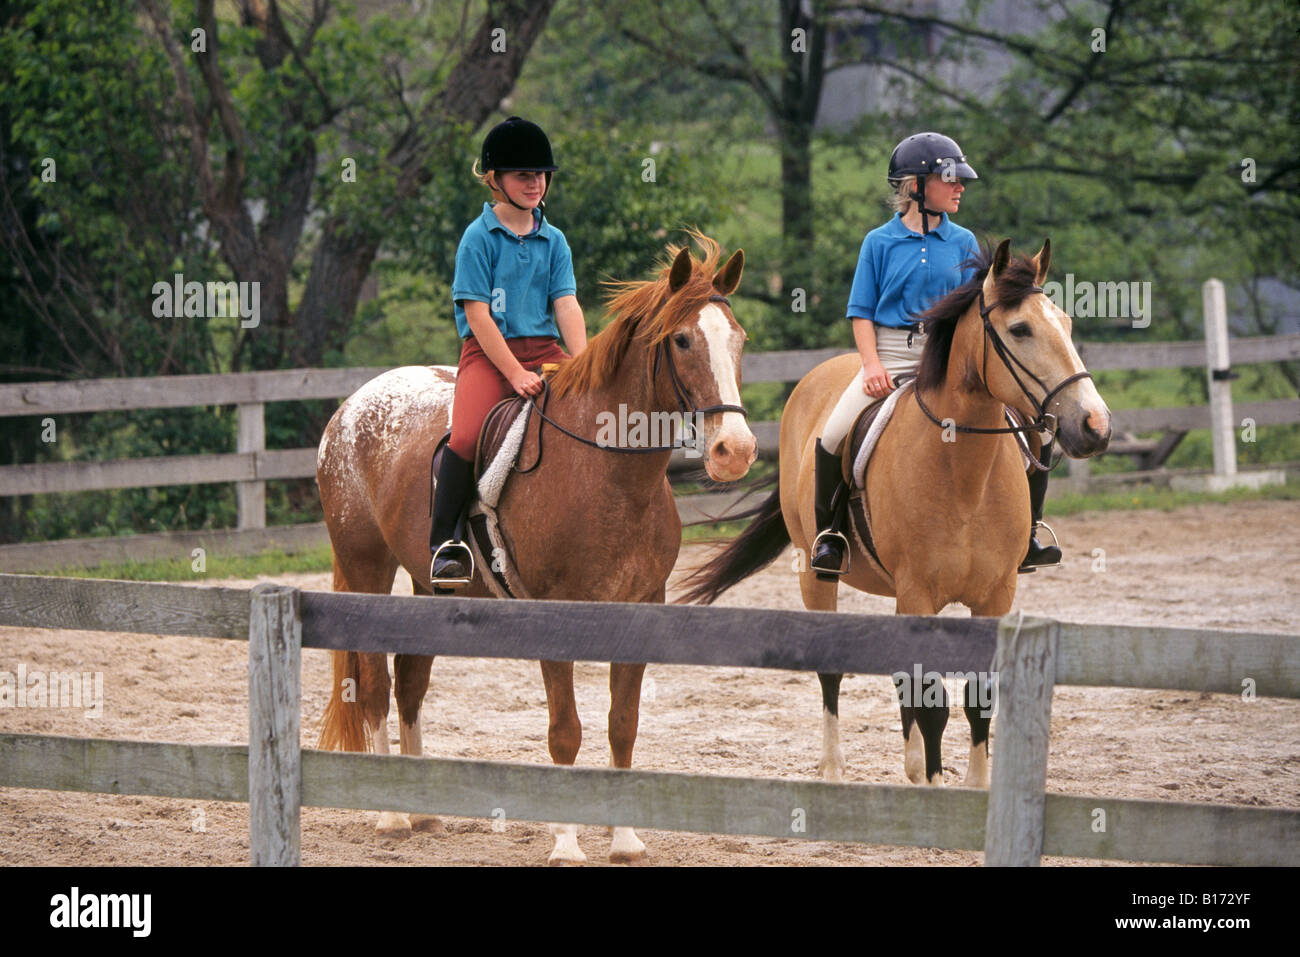 Zwei junge Pre Teen Mädchen gekleidet in der Kleidung Praxis Dresage auf ihren Pferden reiten Stockfoto